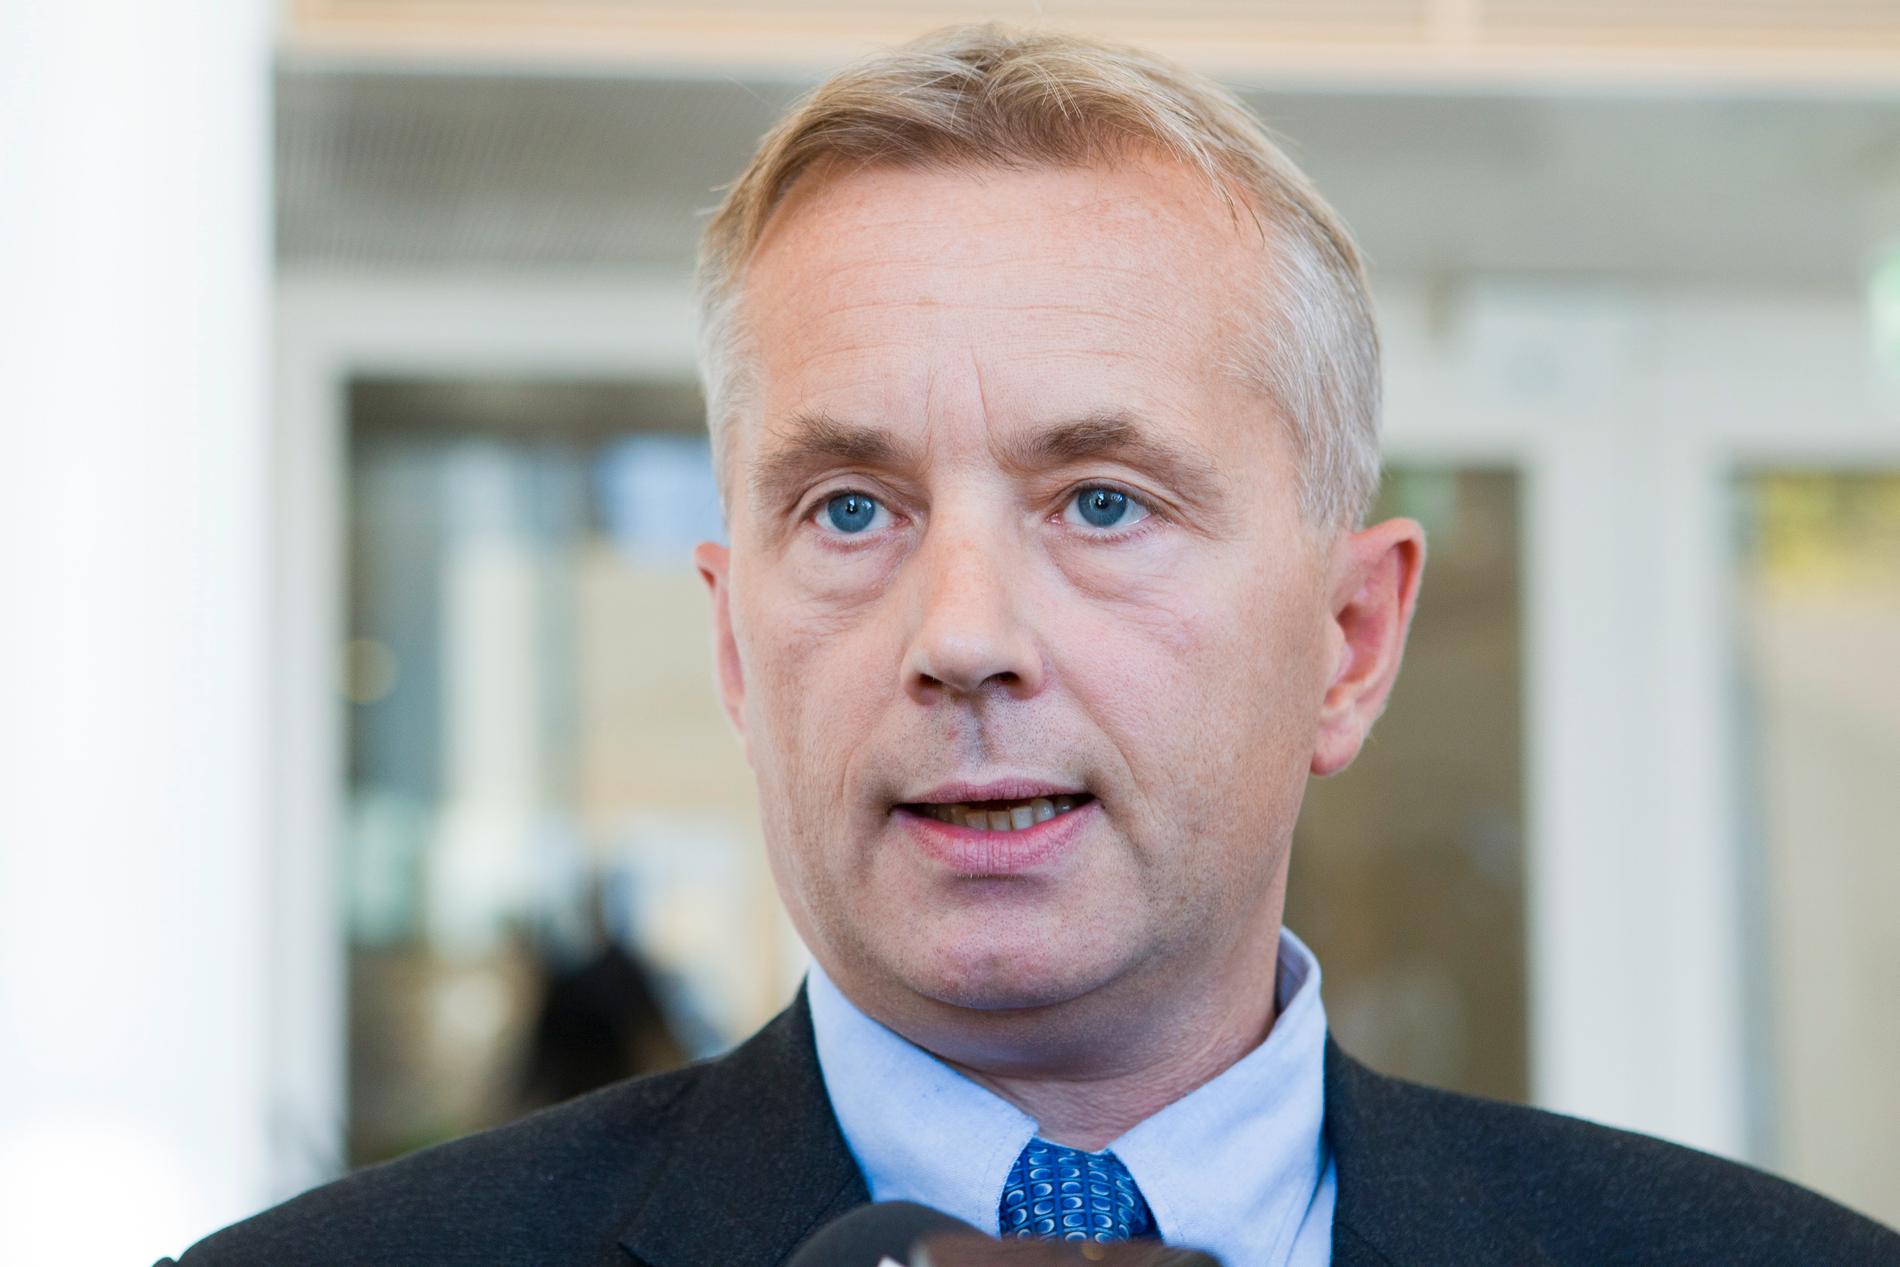 Justisminister Knut Storberget får skarp kritikk for ikke å ha iverksatt tilstrekkelige tiltak mot voldtekter.